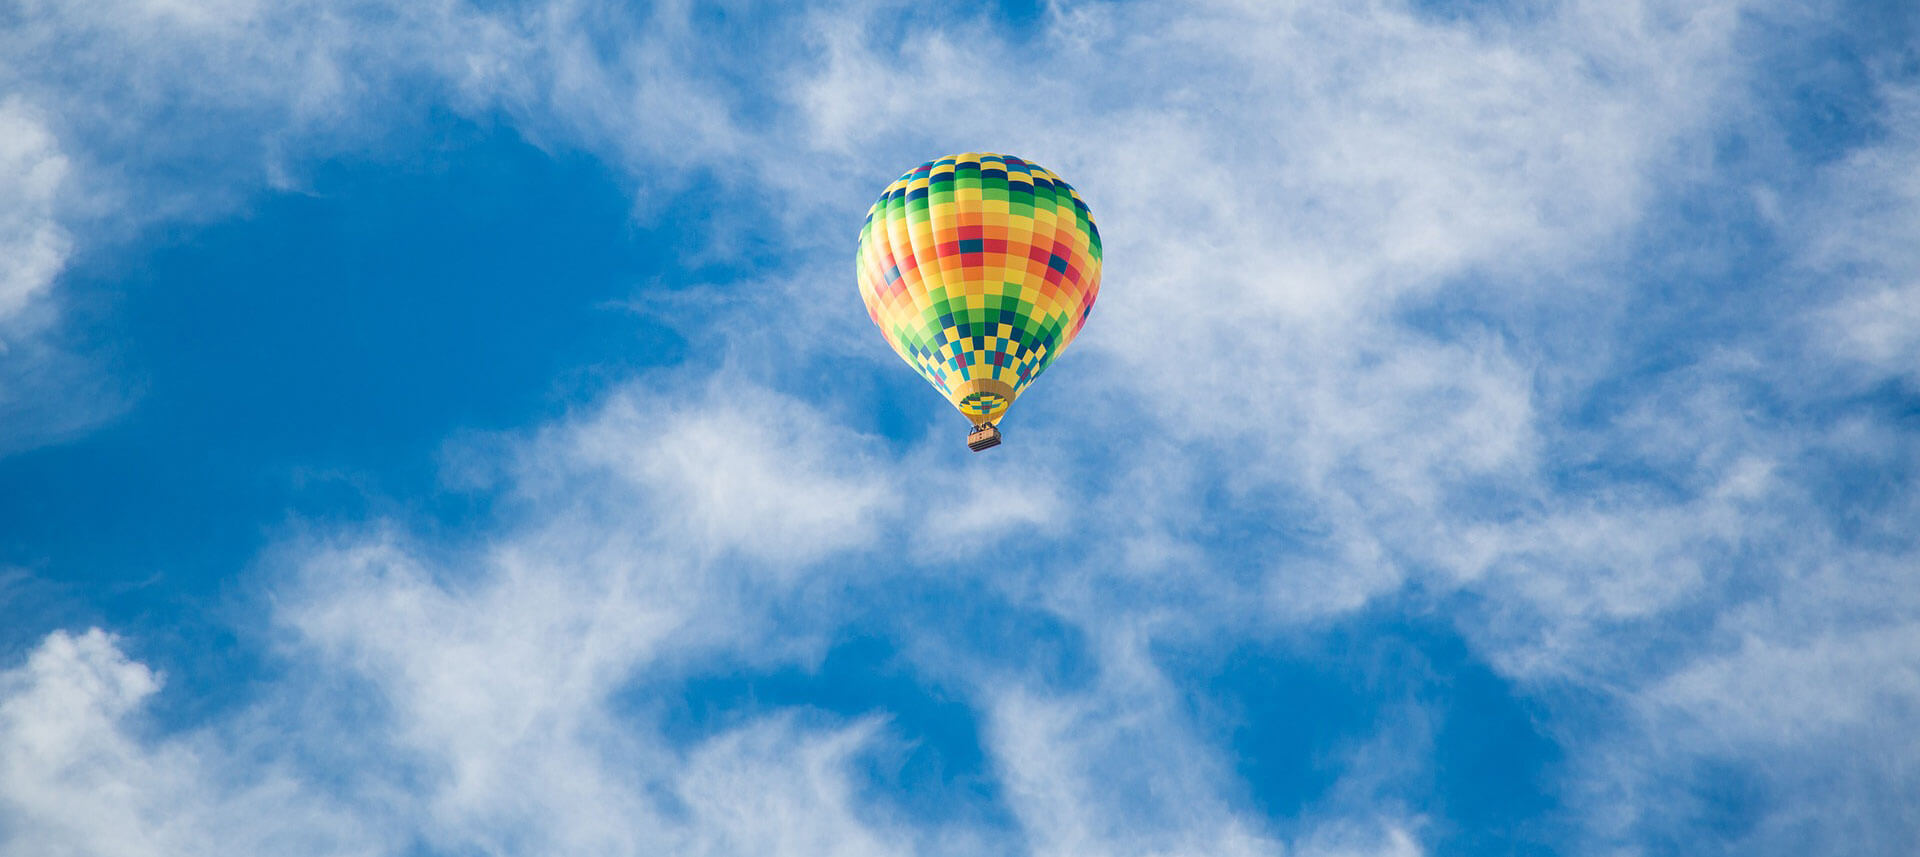 Dubai Urlaub buchen und vom Heißluftballon aus die Stadt betrachten